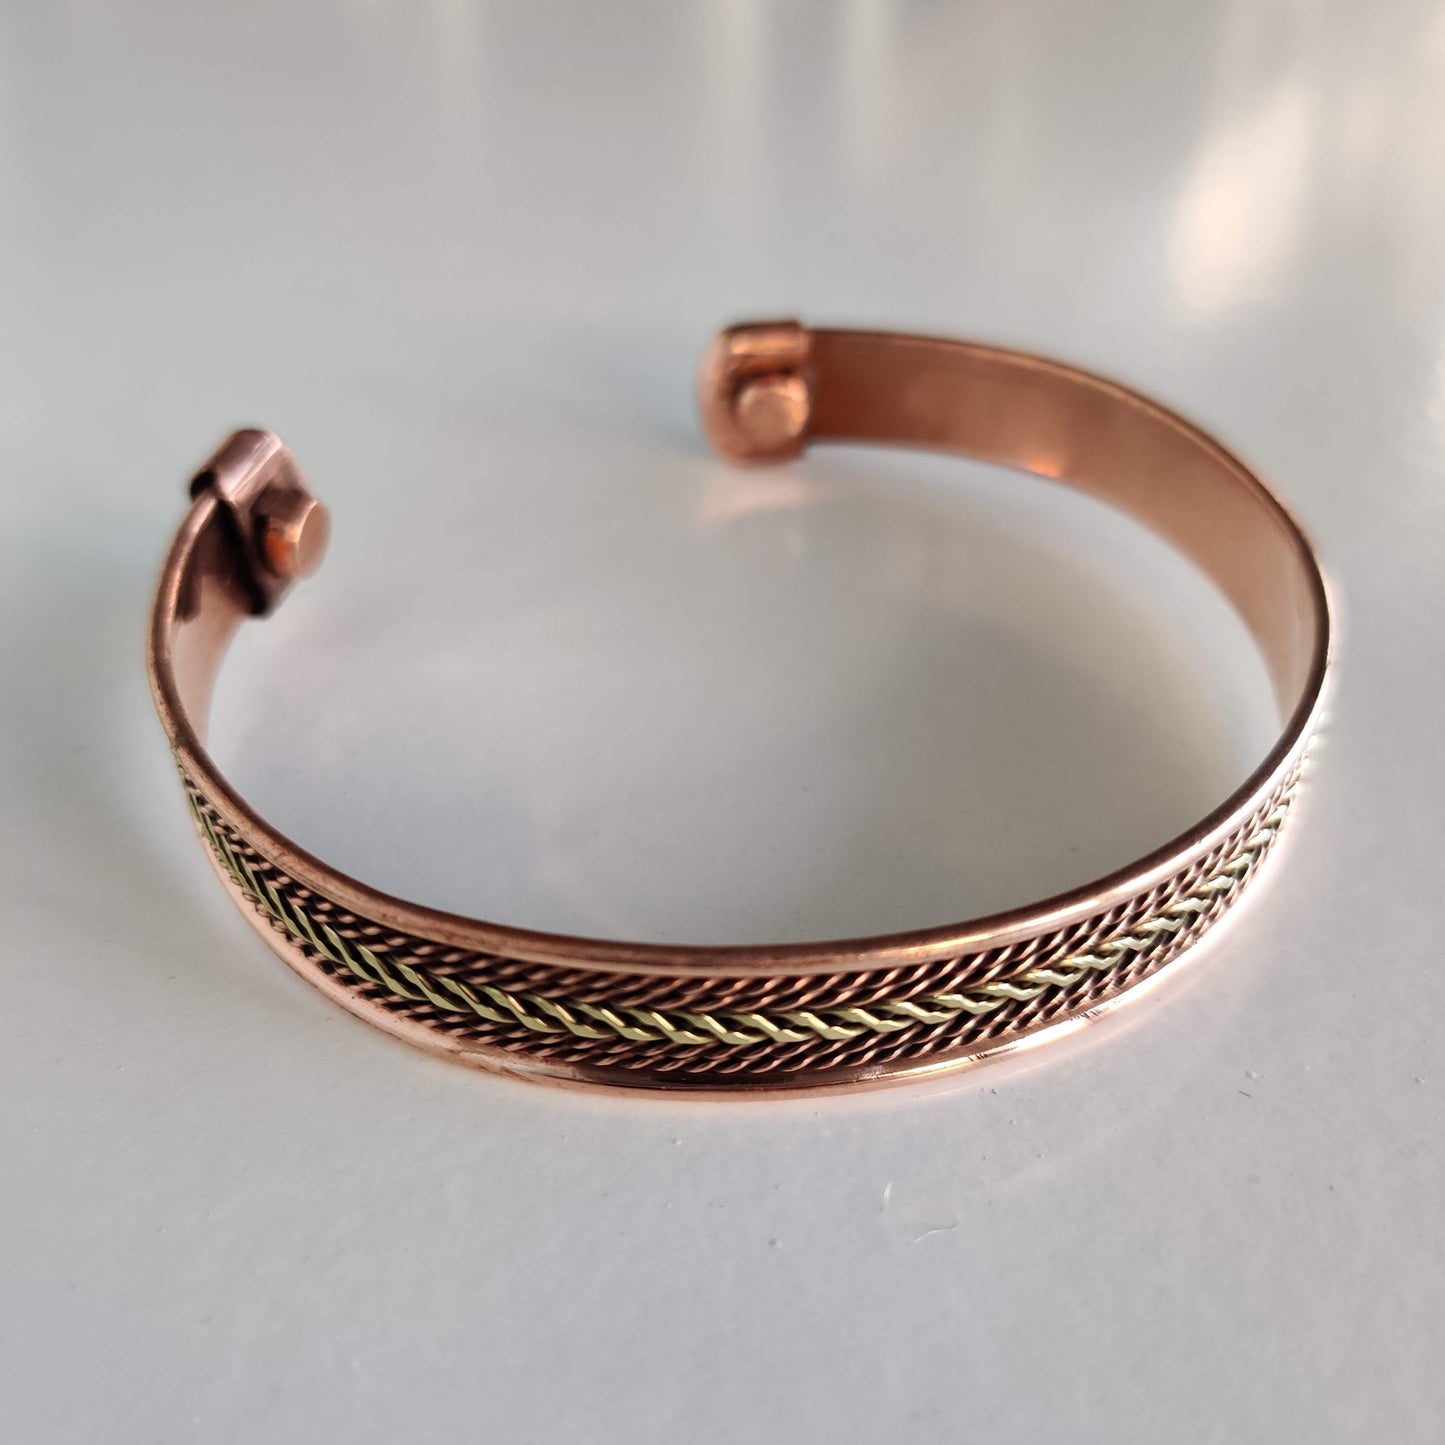 Golden Stripes Copper Magnetic Bracelet - Rivendell Shop